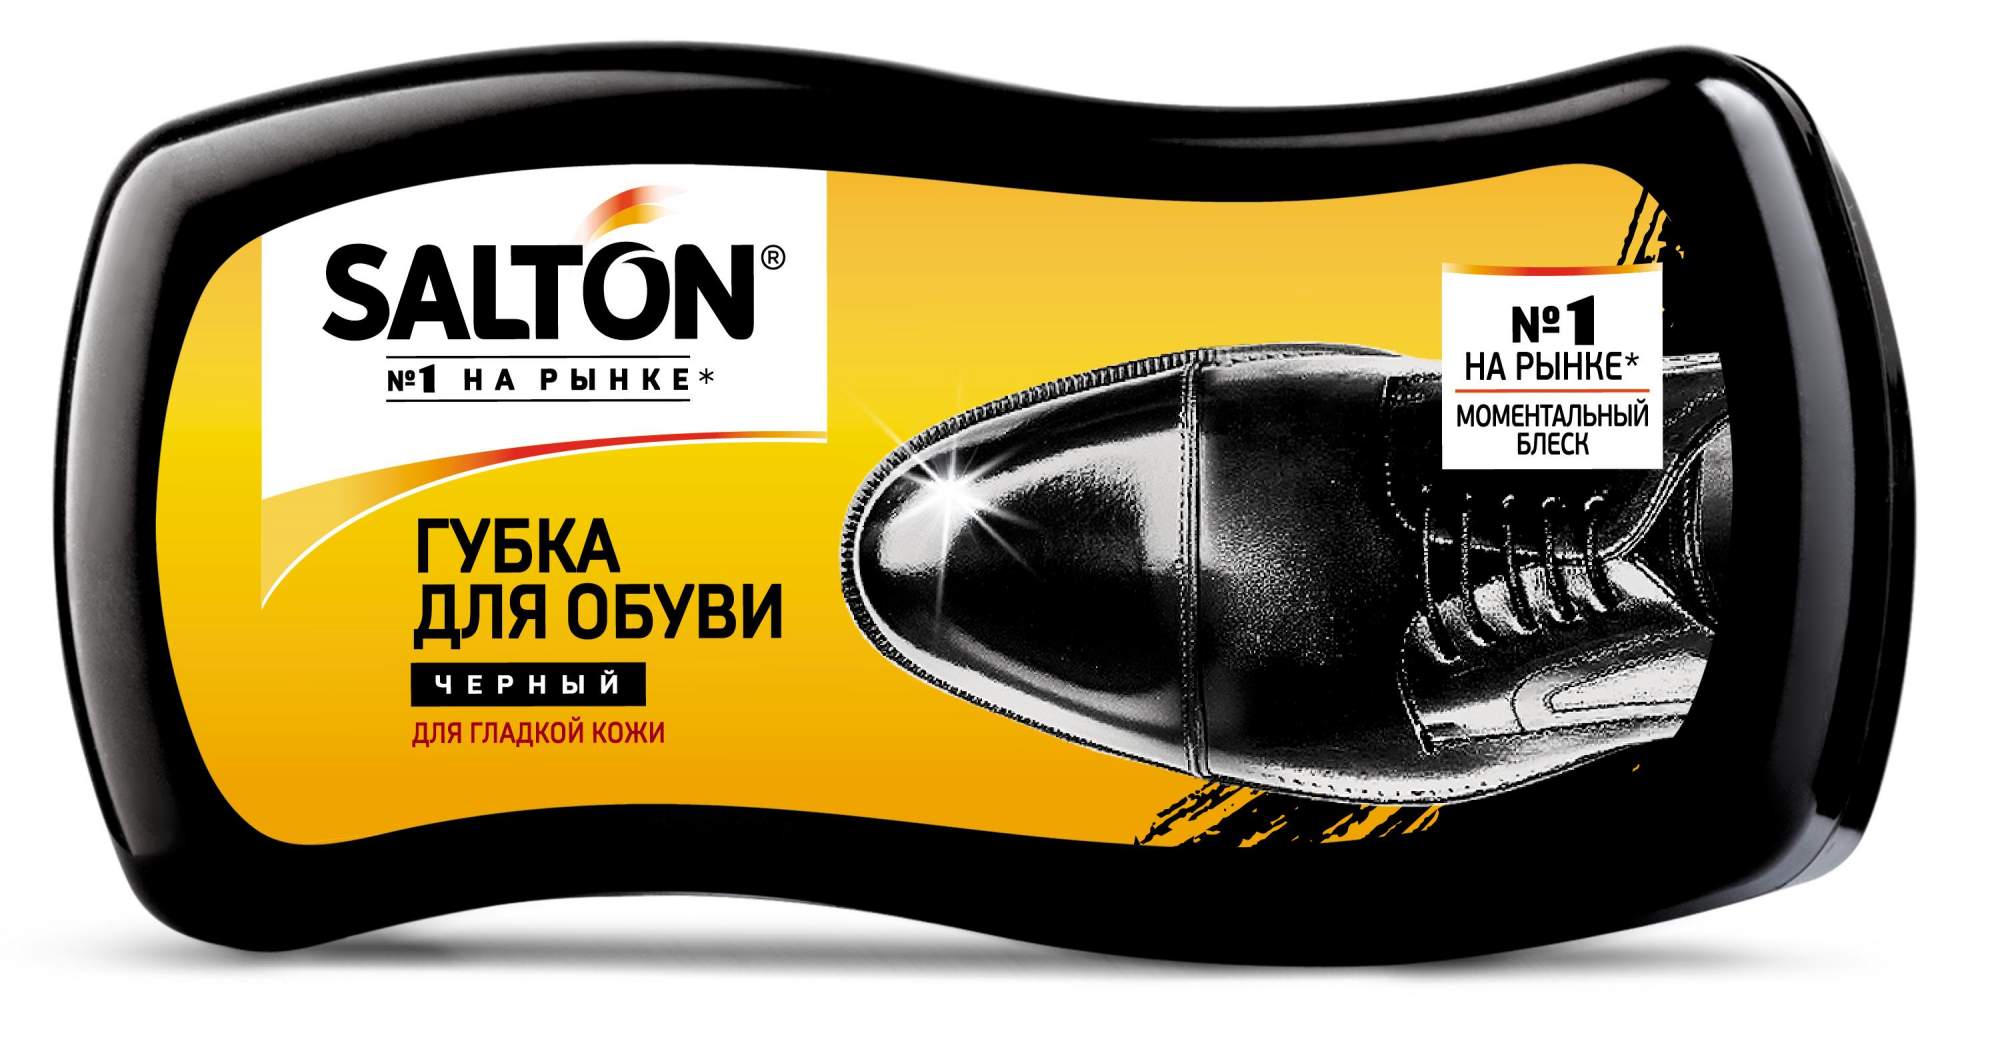 Губка для обуви Salton Волна для гладкой кожи черная (набор 2шт)